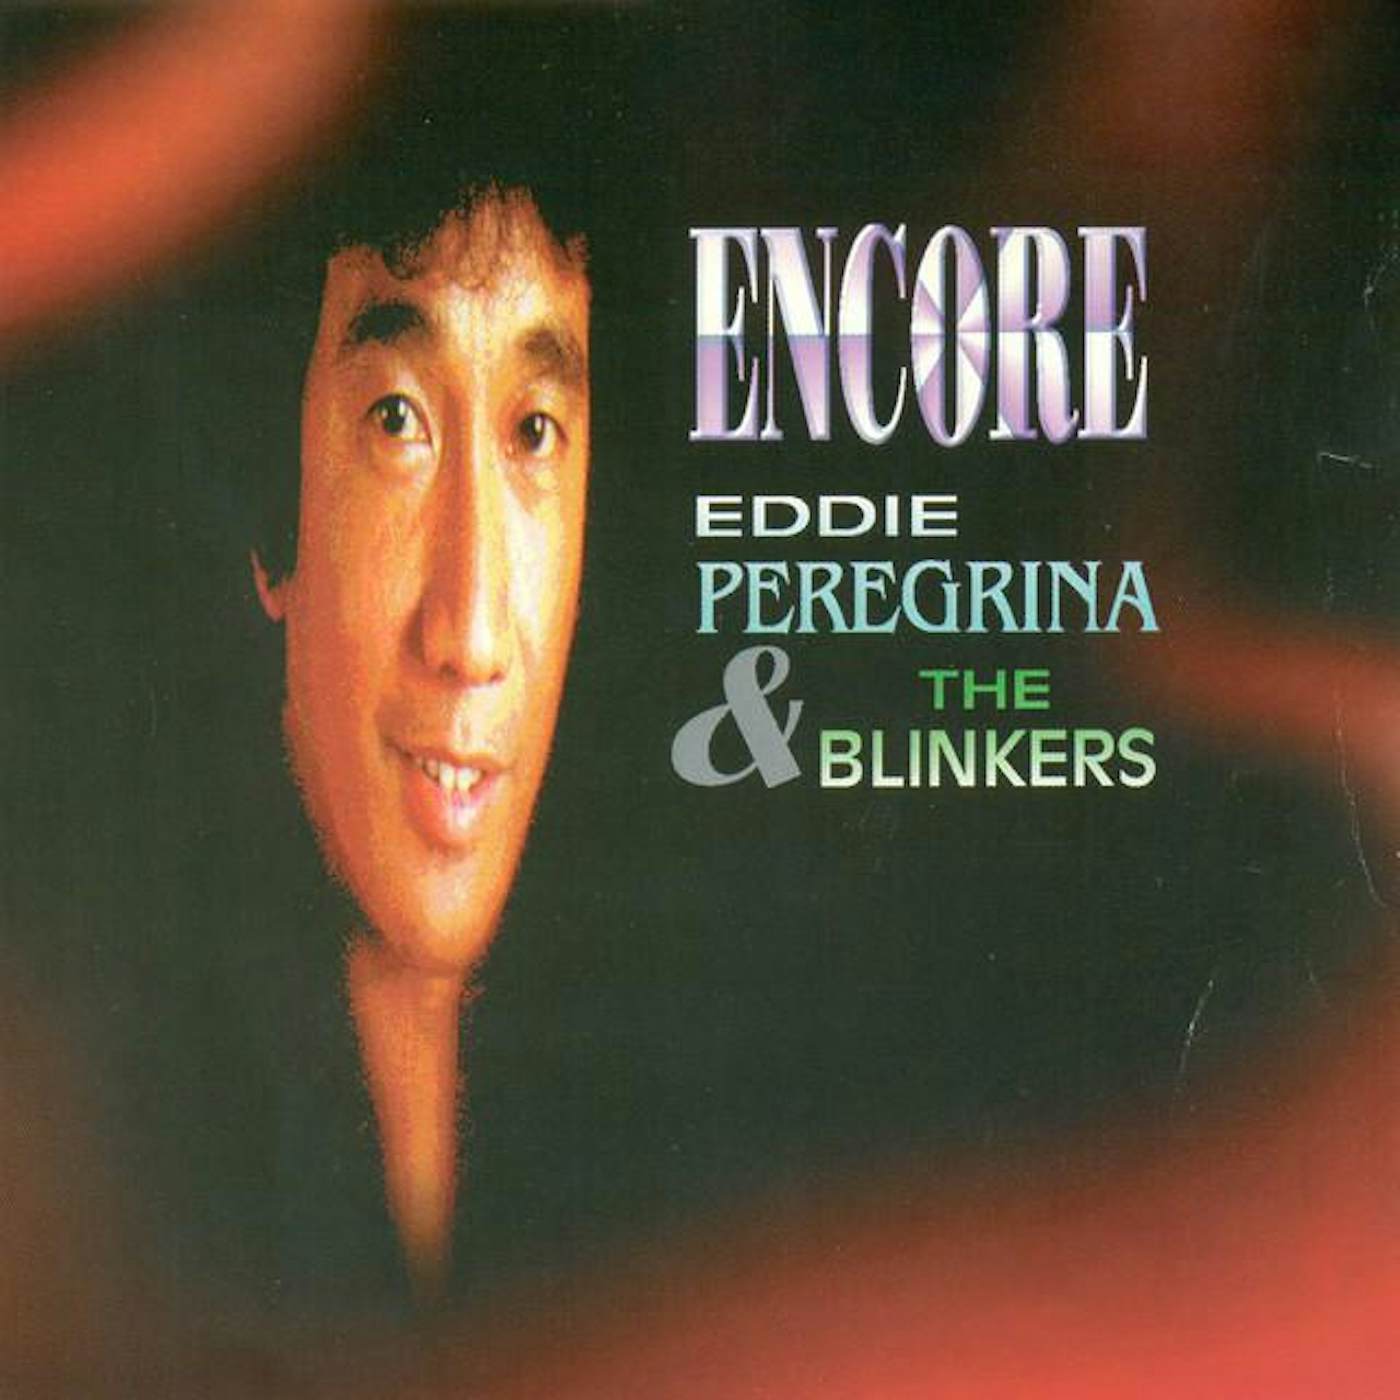 Eddie Peregrina & The Blinkers